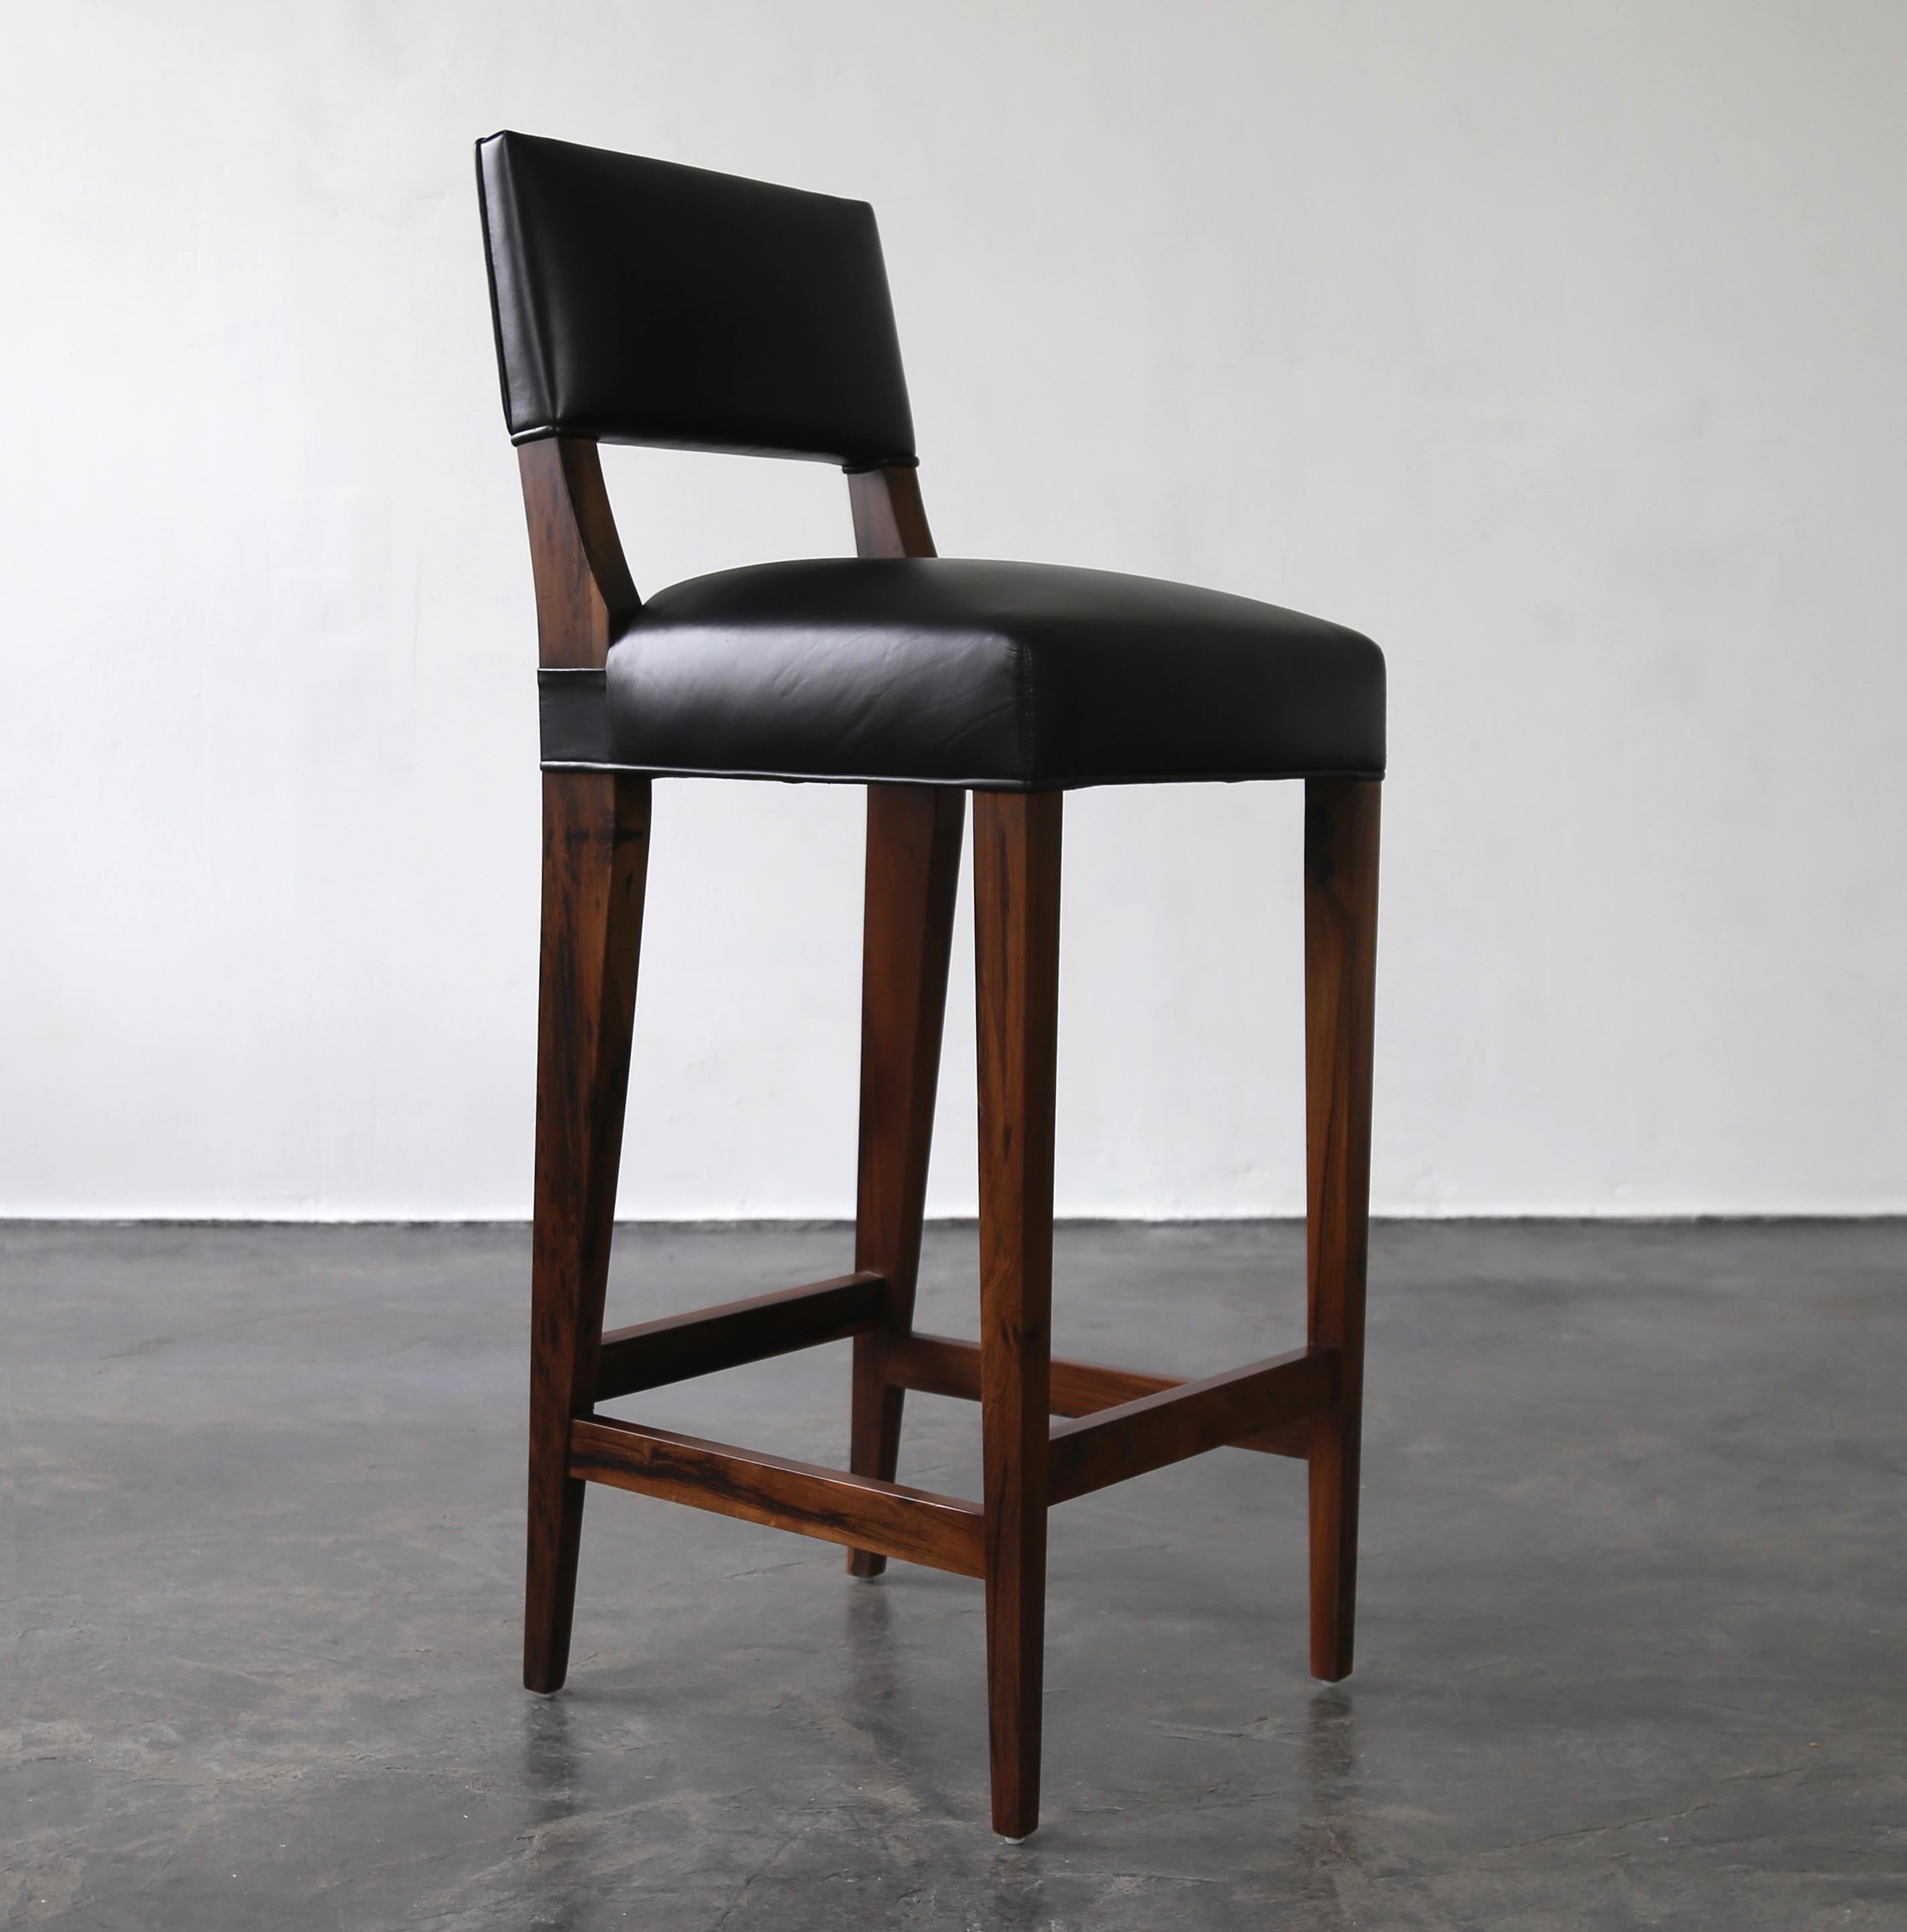 Costantini ist stolz darauf, die härtesten und schönsten Harthölzer für die Herstellung seiner Sitzmöbel zu verwenden. Der Bruno Hocker aus argentinischem Palisanderholz hat eine relativ niedrige, kantige Rückenlehne, die an den gleichnamigen Stuhl